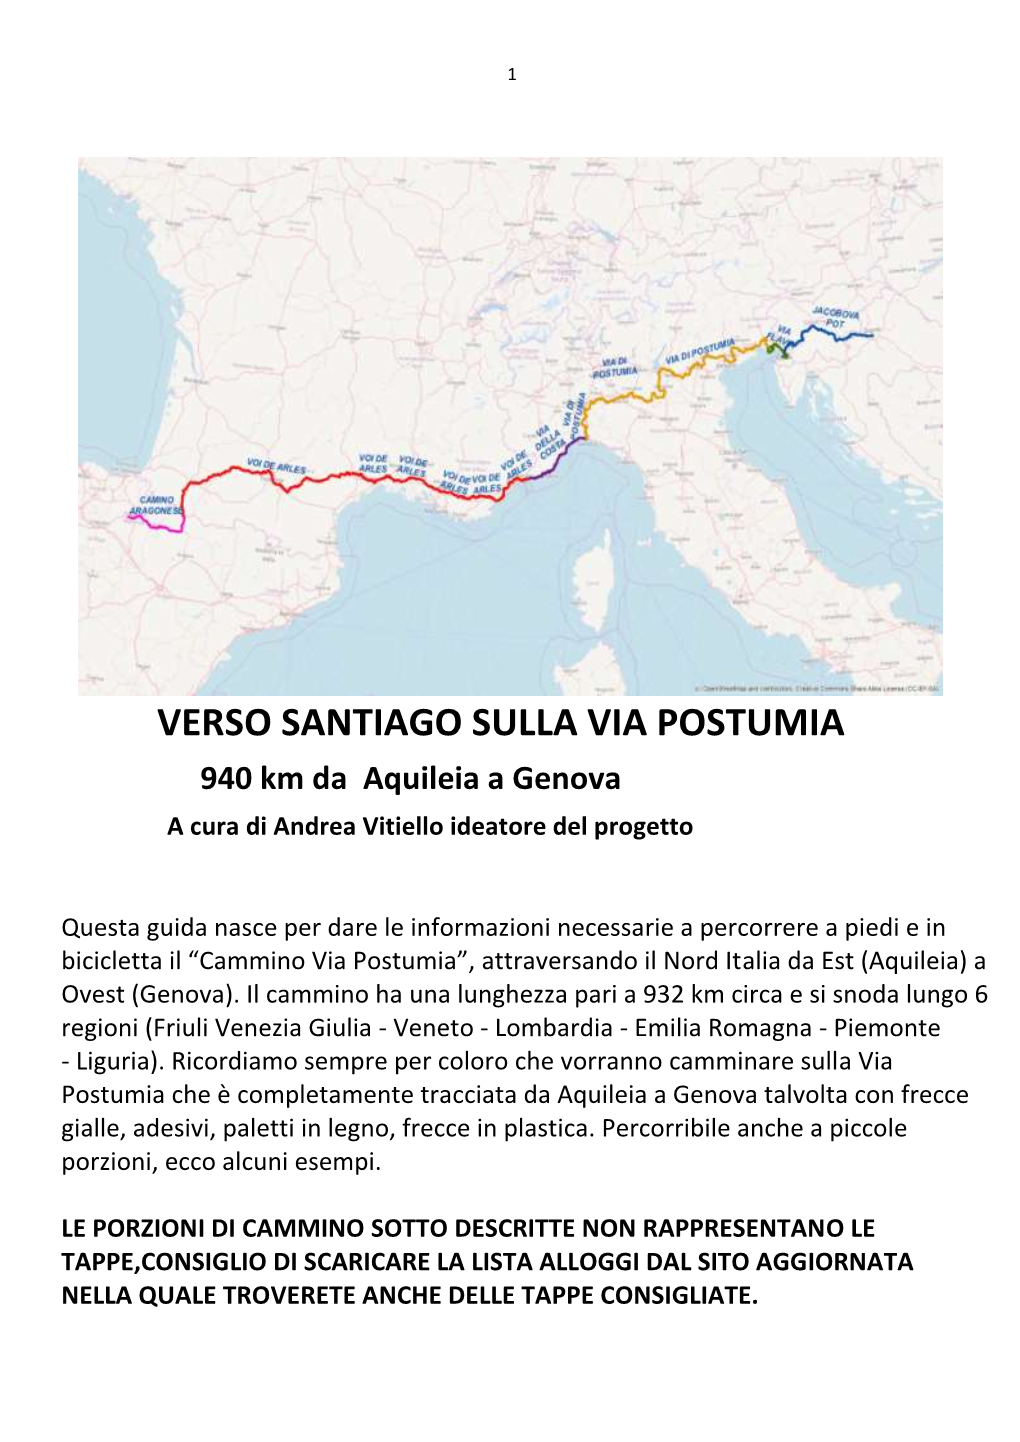 VERSO SANTIAGO SULLA VIA POSTUMIA 940 Km Da Aquileia a Genova a Cura Di Andrea Vitiello Ideatore Del Progetto